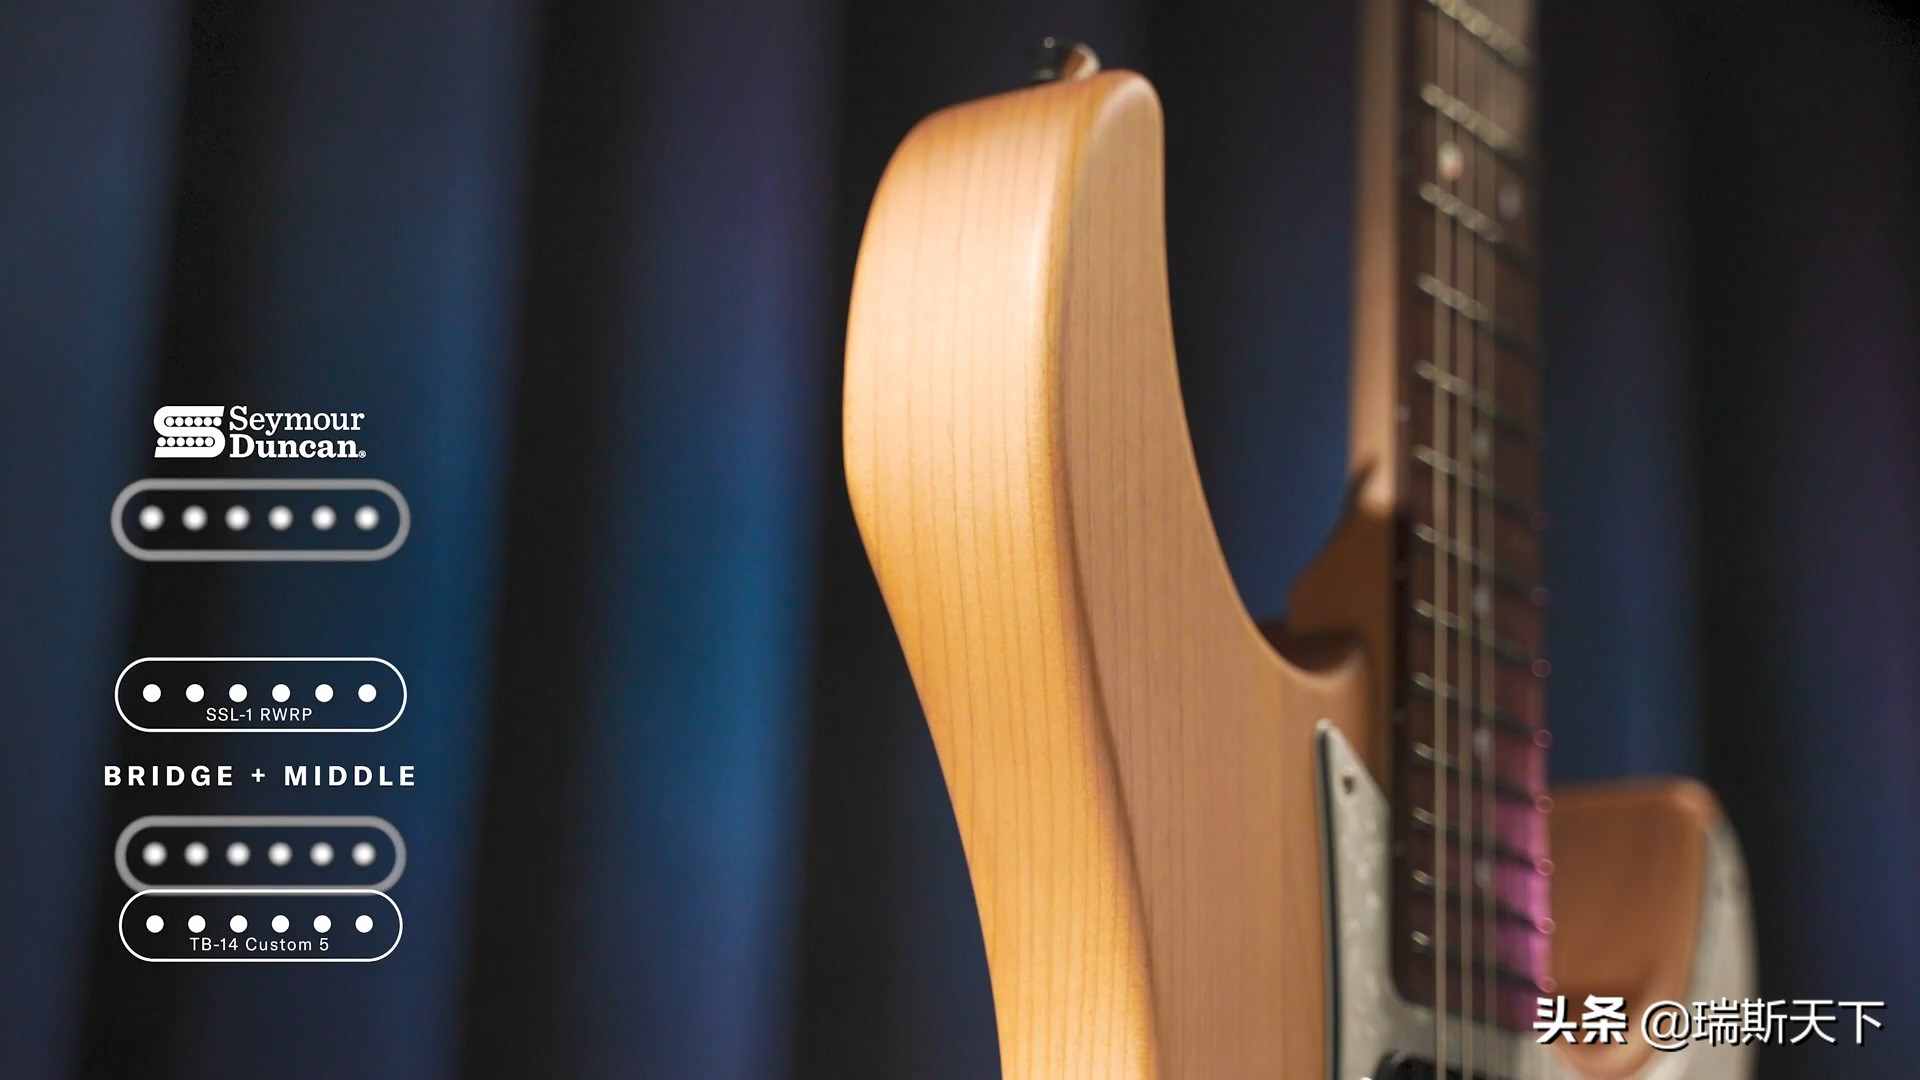 雅马哈发布新品电吉他 颜值超高仅售7000元